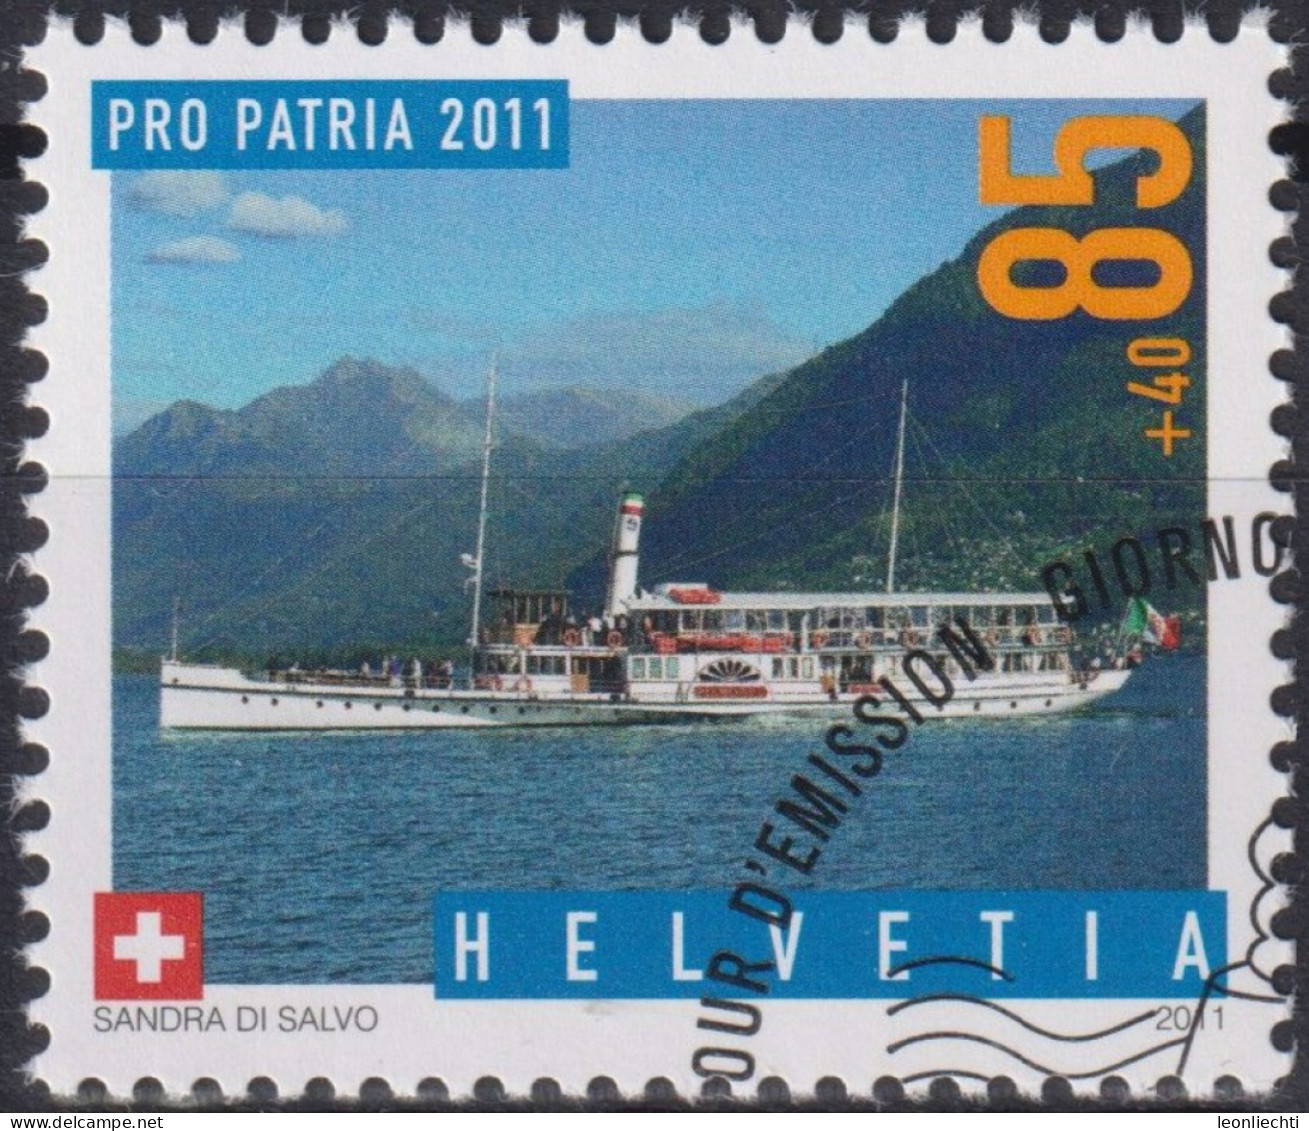 2011 Schweiz Pro Patria, Dampfschiff, Piemonte ⵙ Zum:CH B313, Mi:CH 2204, Yt:CH 2125 - Used Stamps